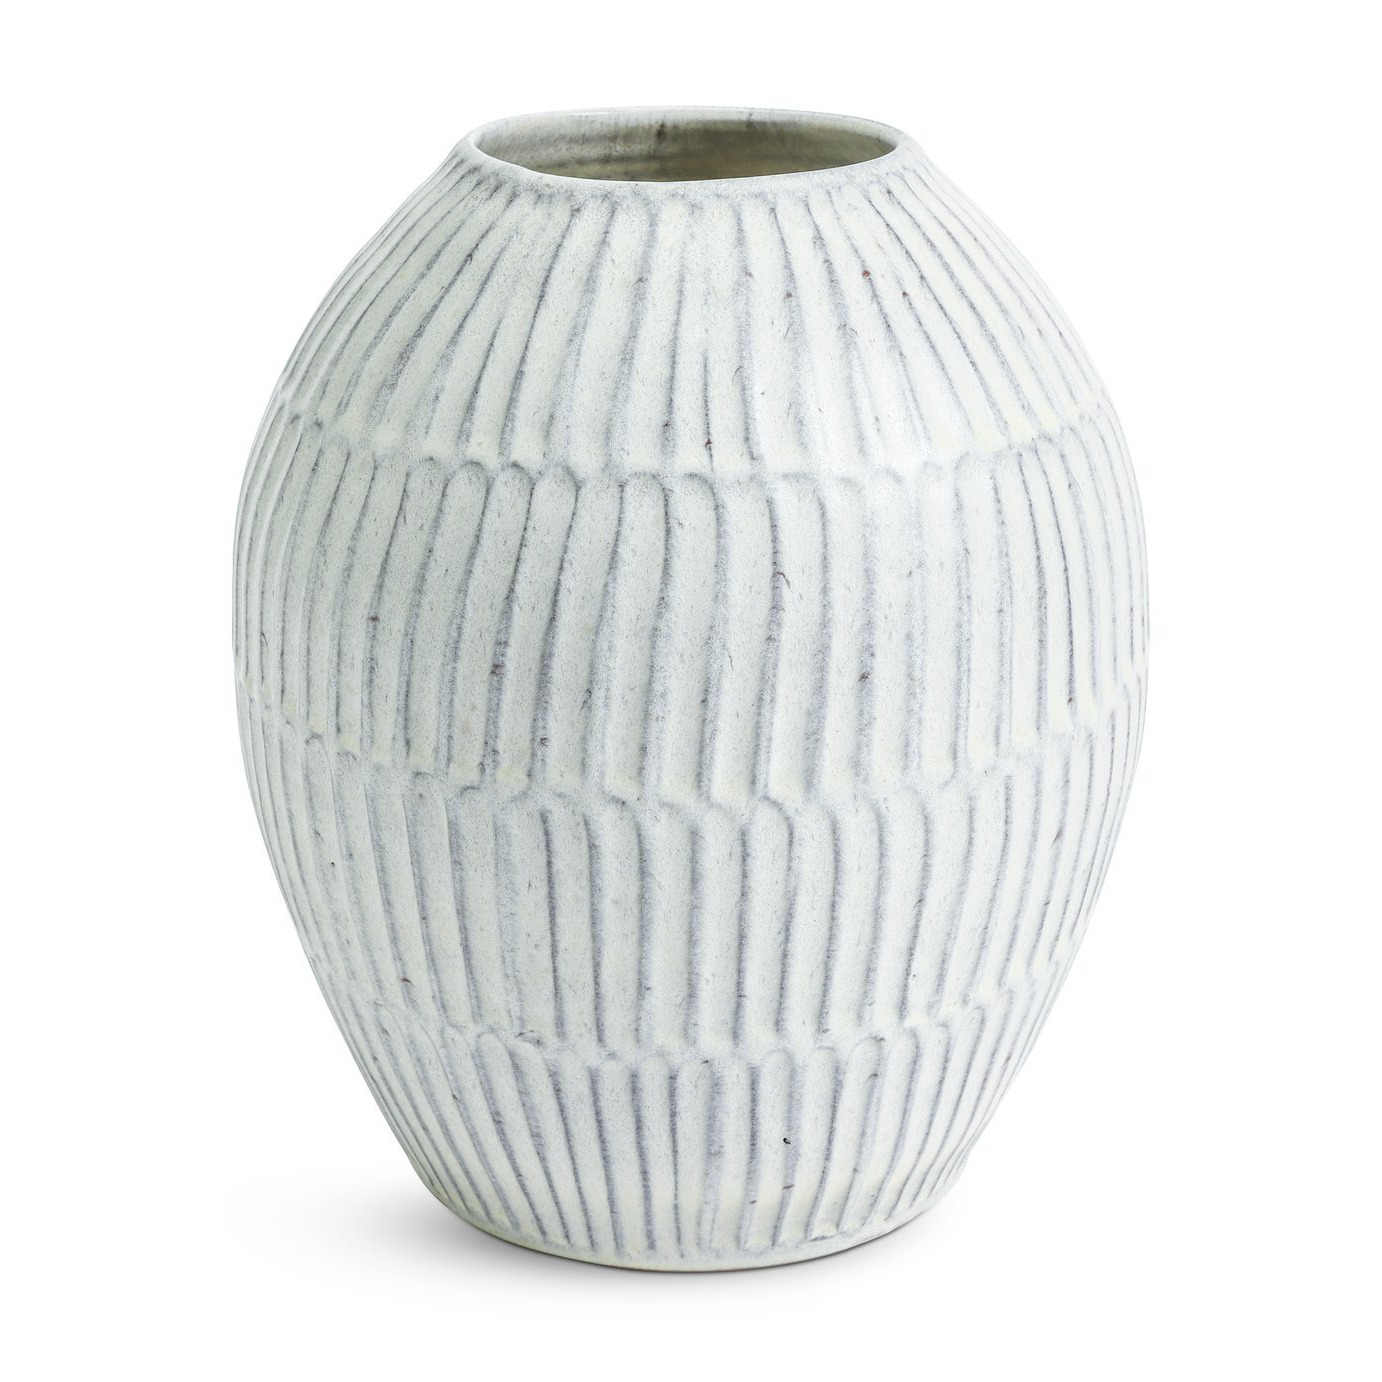 Habitat Ceramic Glazed Vase - White - image 1